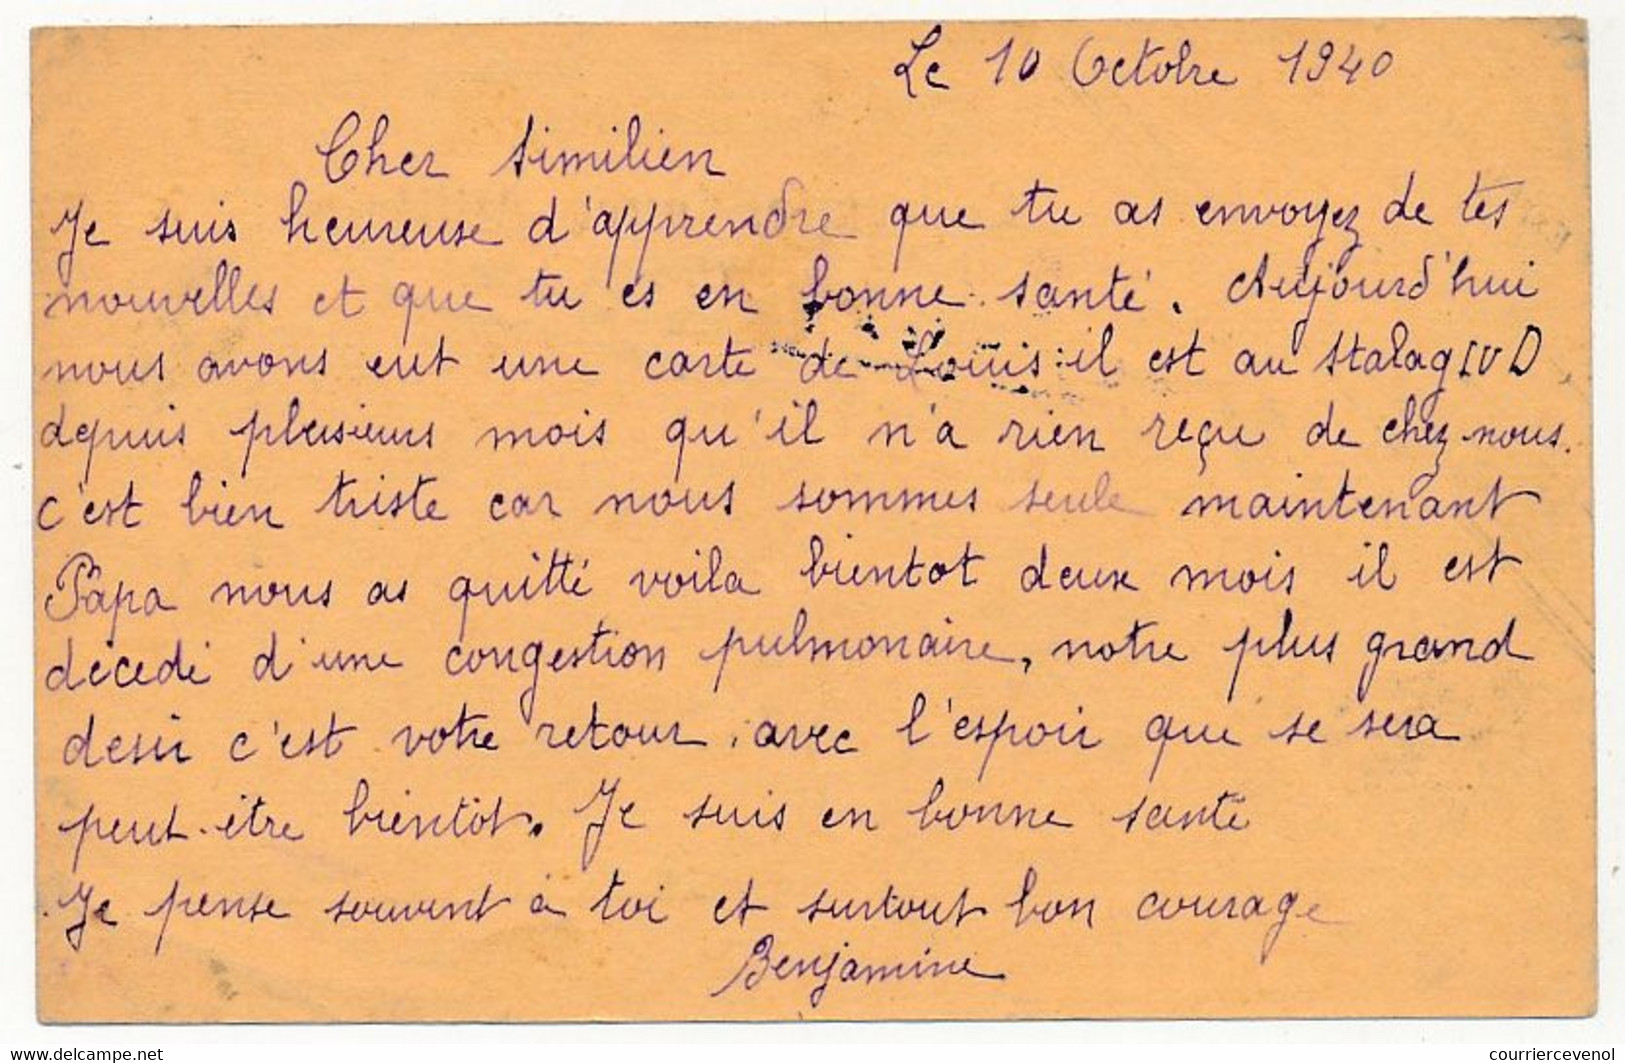 KRIEGSGEFANGENENPOST - Carte Postale D'édition Privée Pour Le Stalag II B - Censeur 17 - 1940 - Prisonnier Français - Guerra De 1939-45